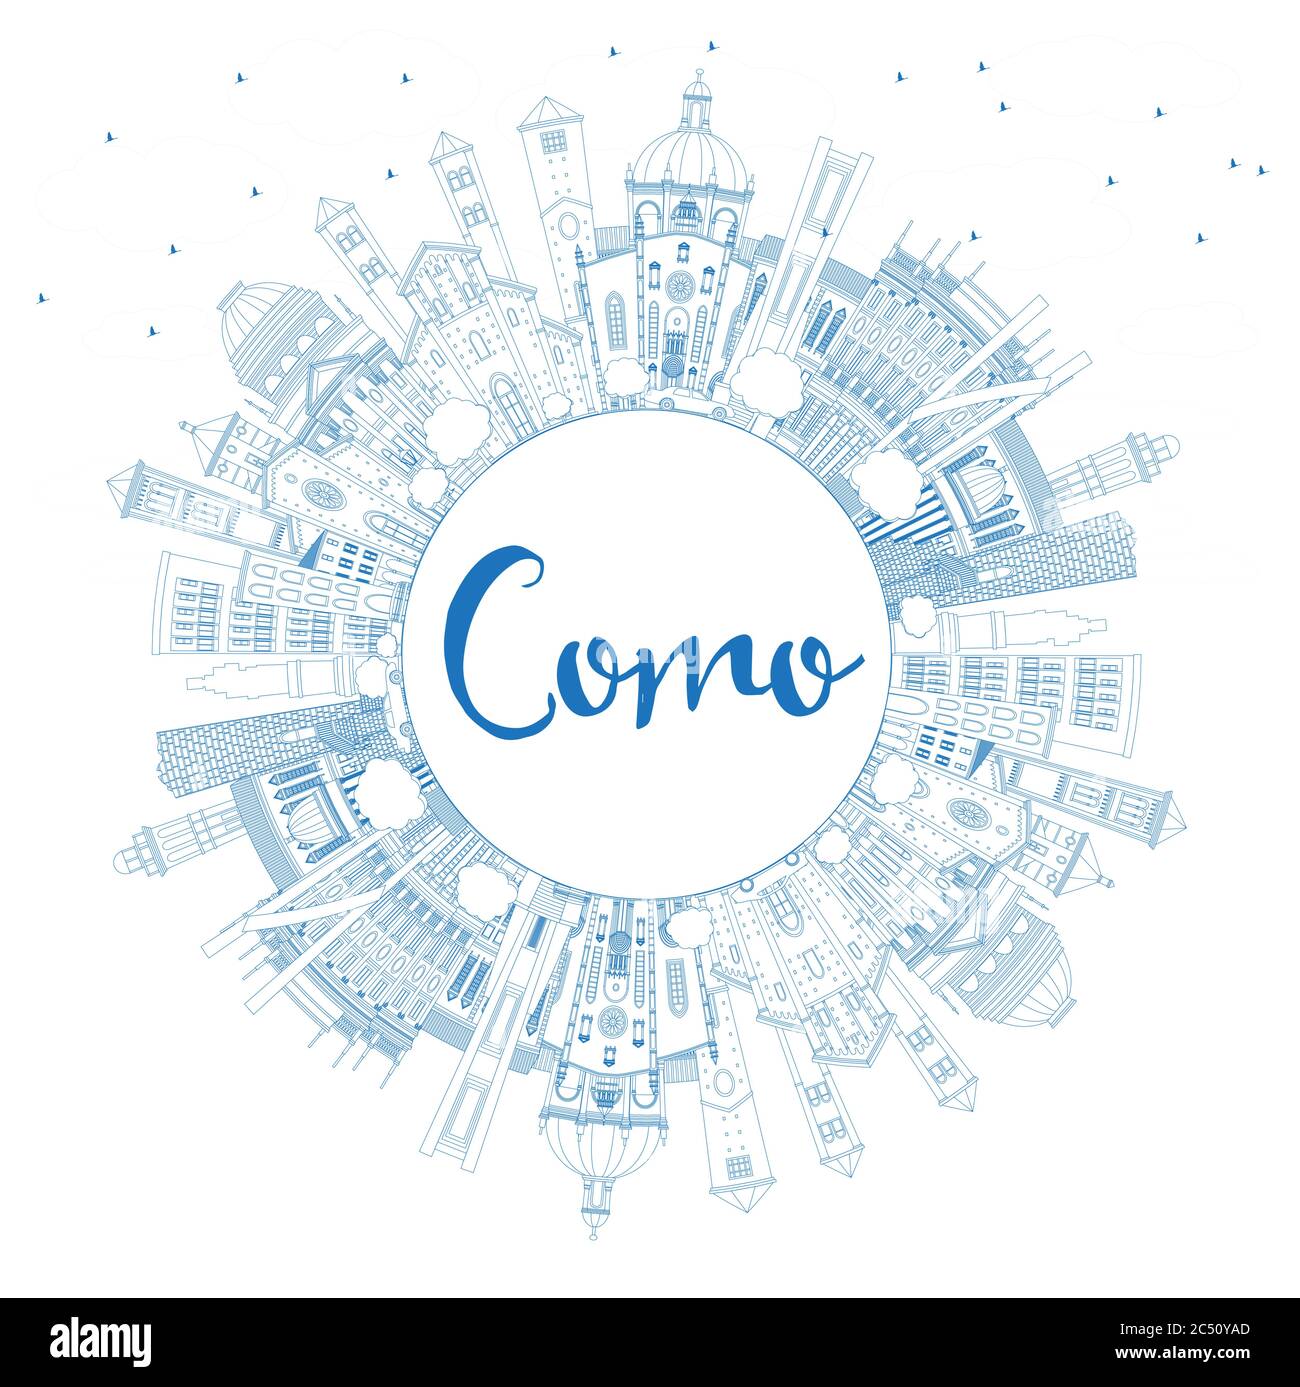 Umriss Como Italien City Skyline mit blauen Gebäuden und Copy Space. Vektorgrafik. Business Travel und Konzept mit historischer Architektur. Stock Vektor